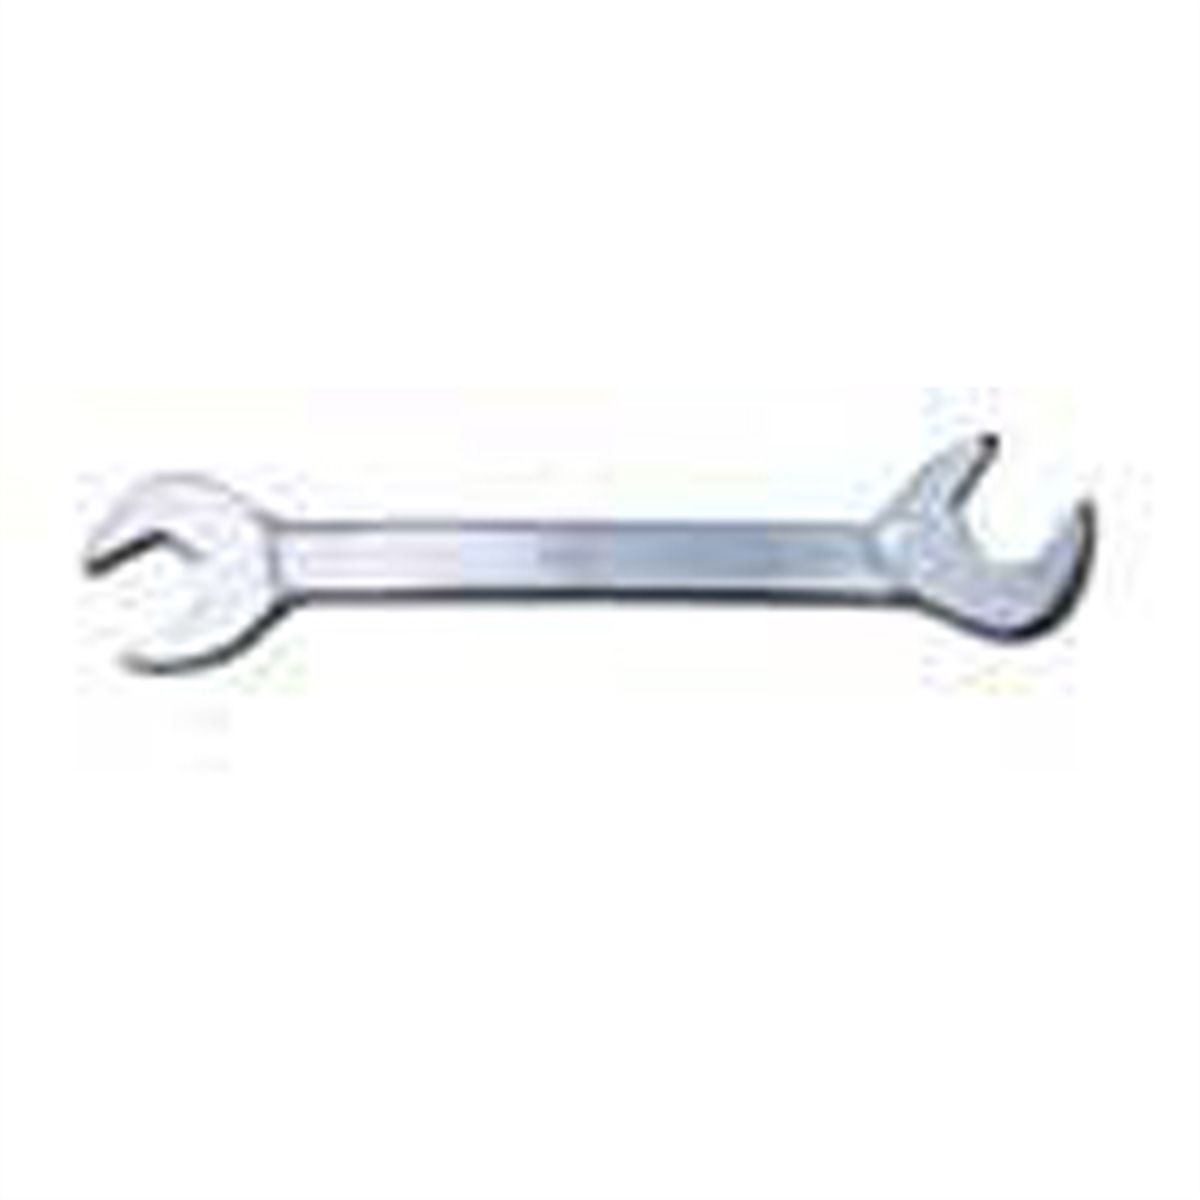 7/8" Fractional SAE Angle Wrench